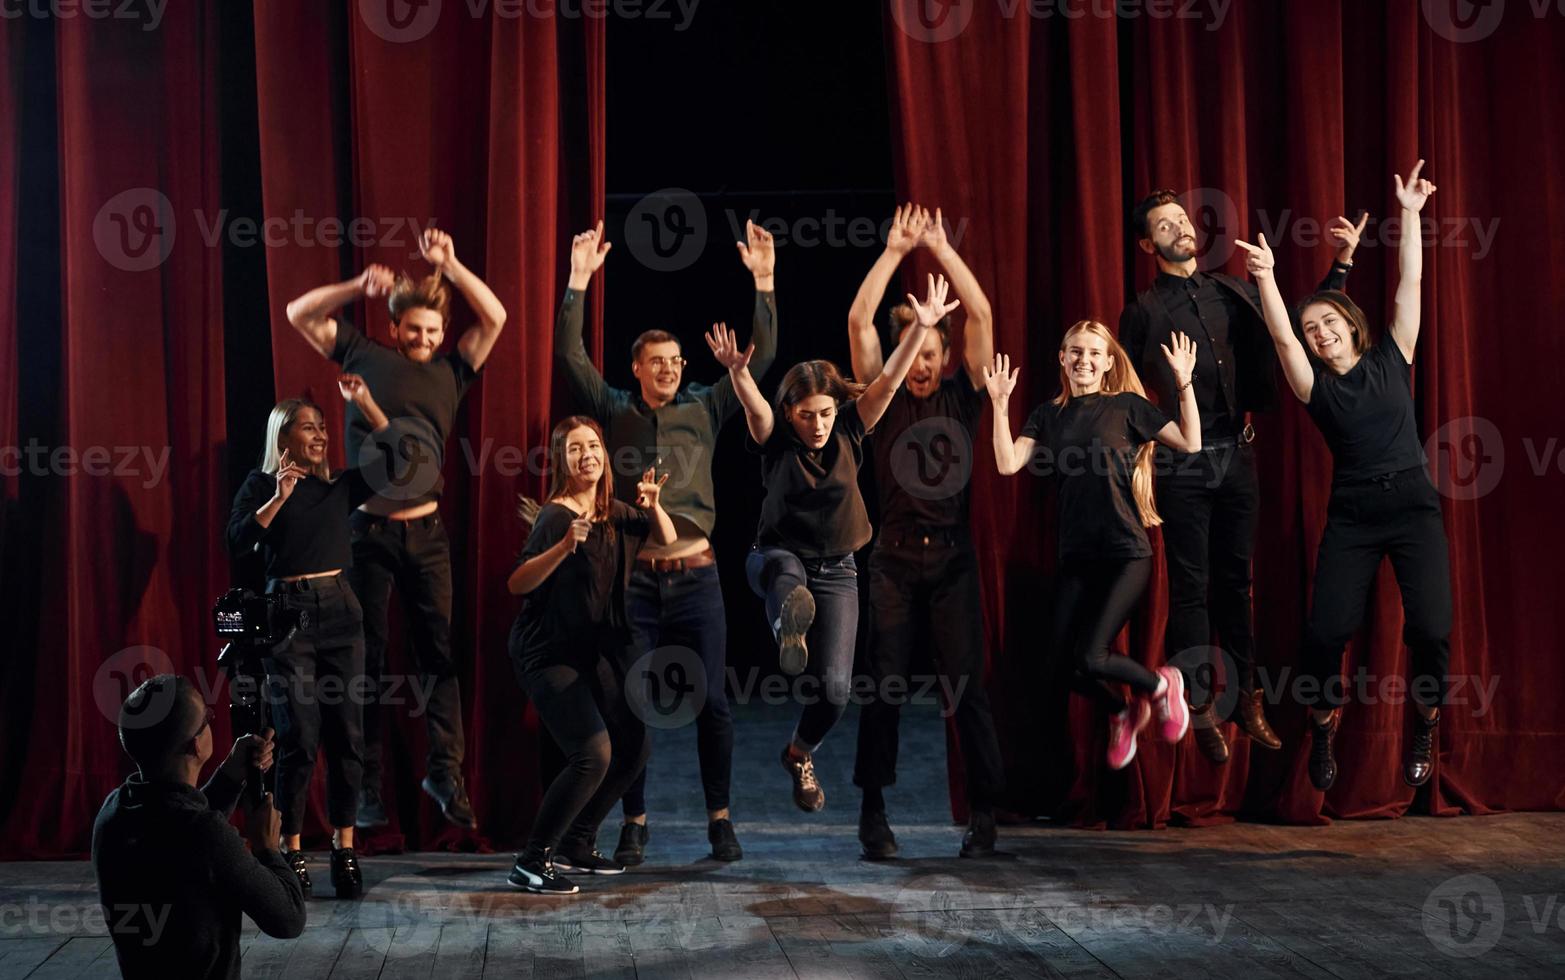 glückliche menschen, die erfolg feiern. Gruppe von Schauspielern in dunkler Kleidung bei der Probe im Theater foto